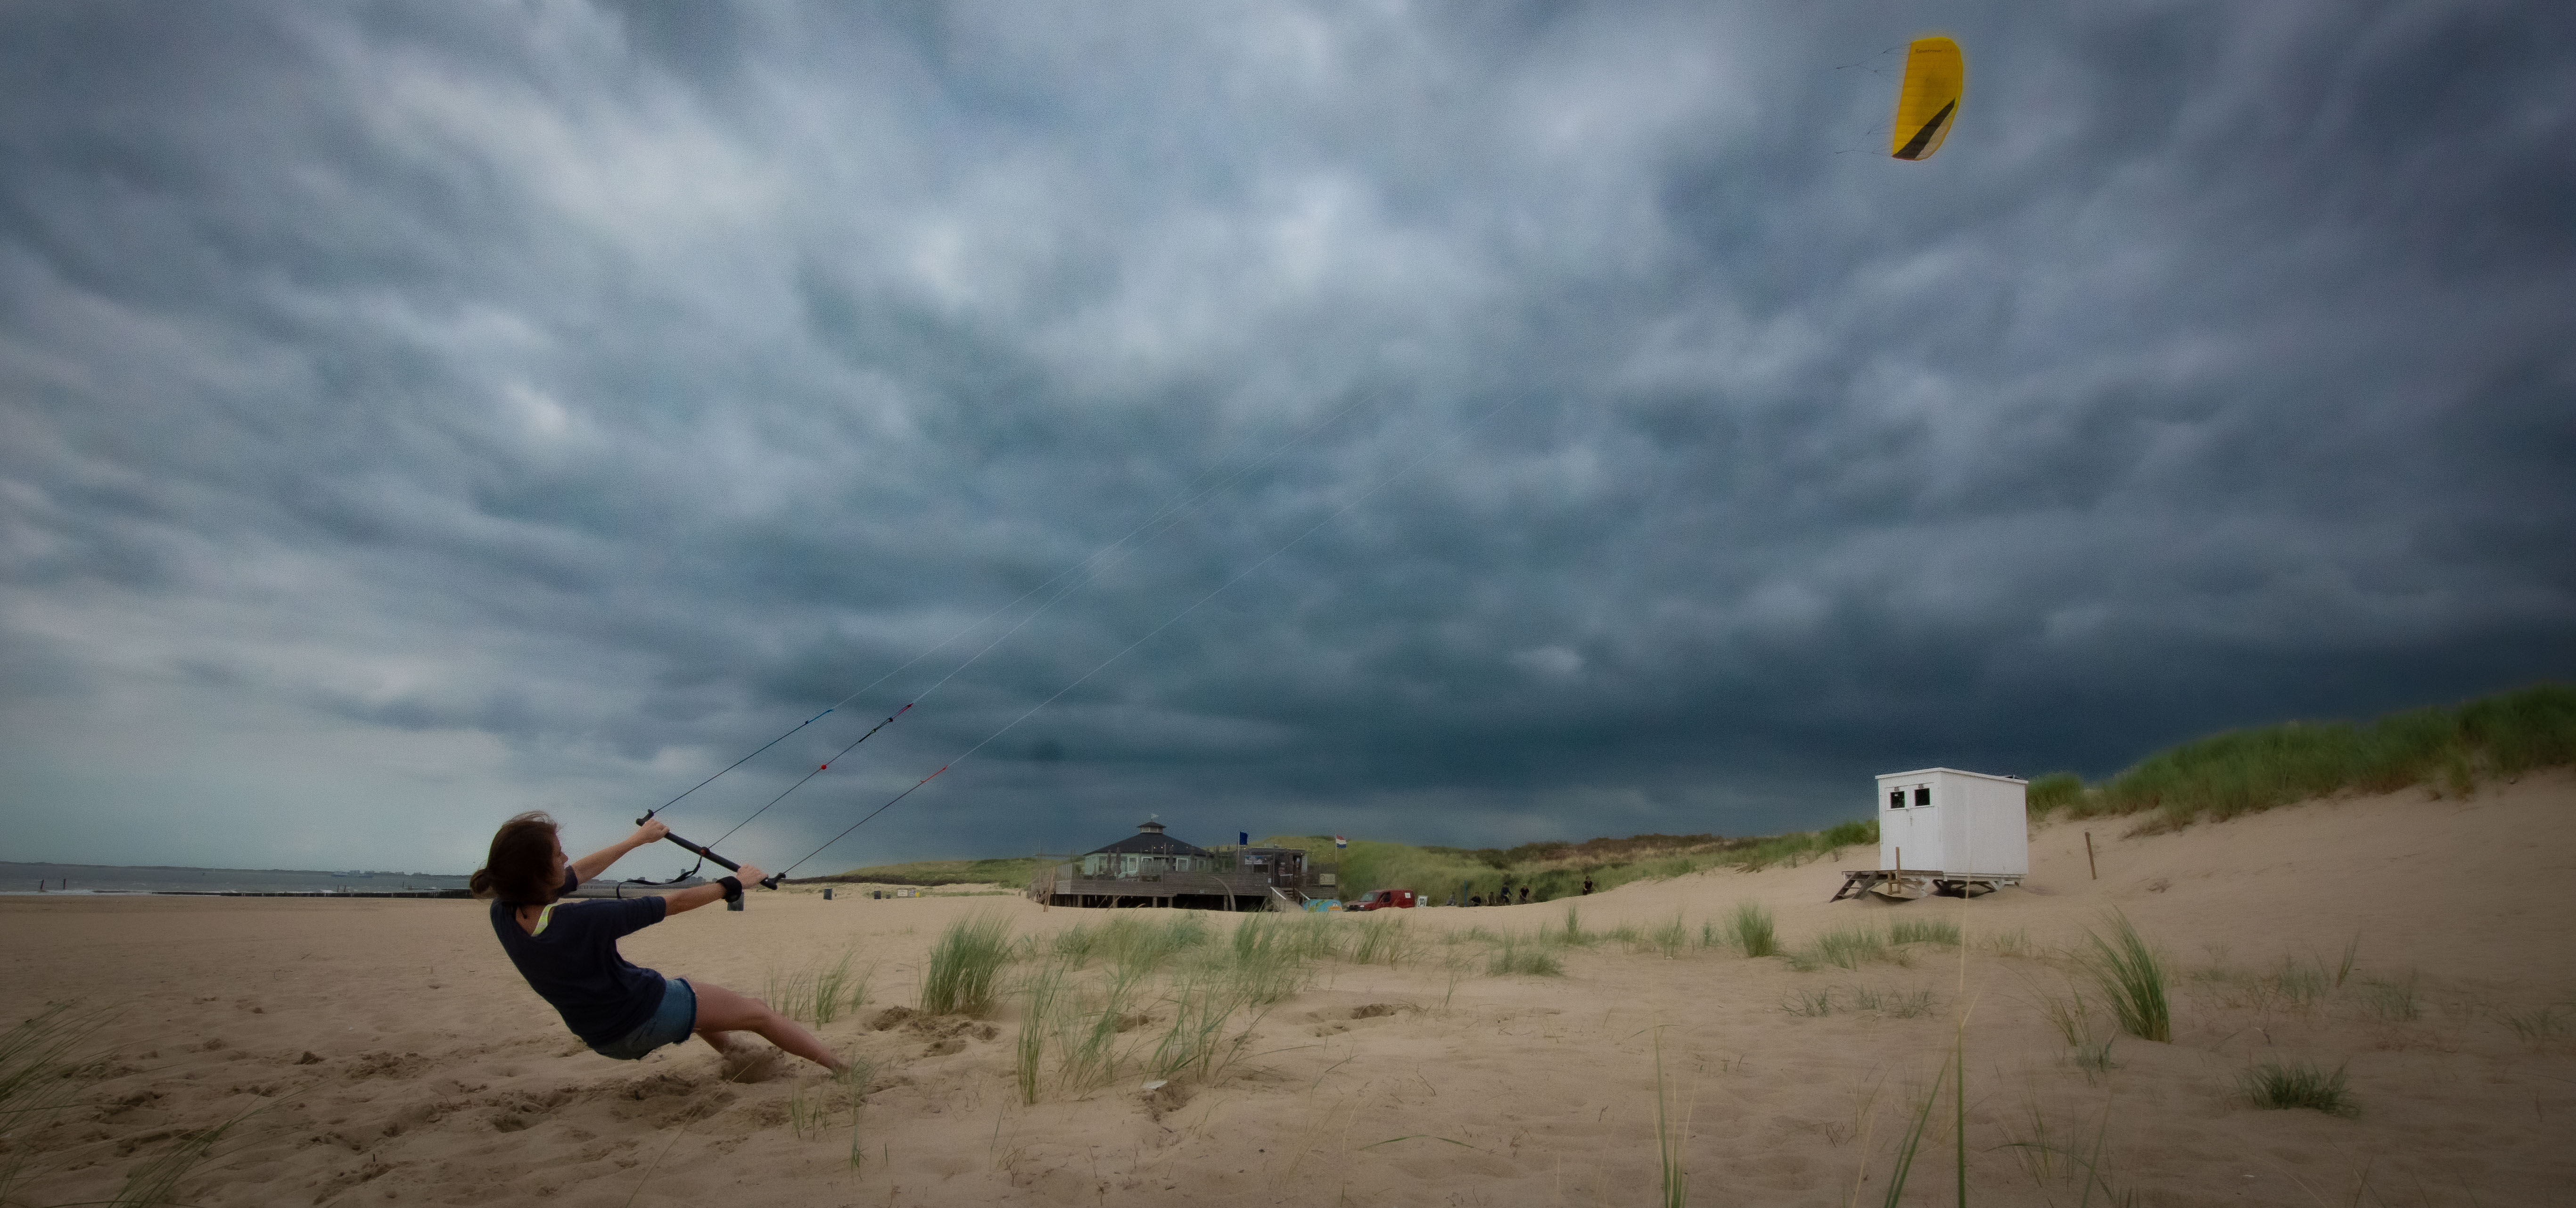 ein Strandpanoroma mit dramatischem Wolkenhimmel, vor dem eine junge Frau einen Kite steuert